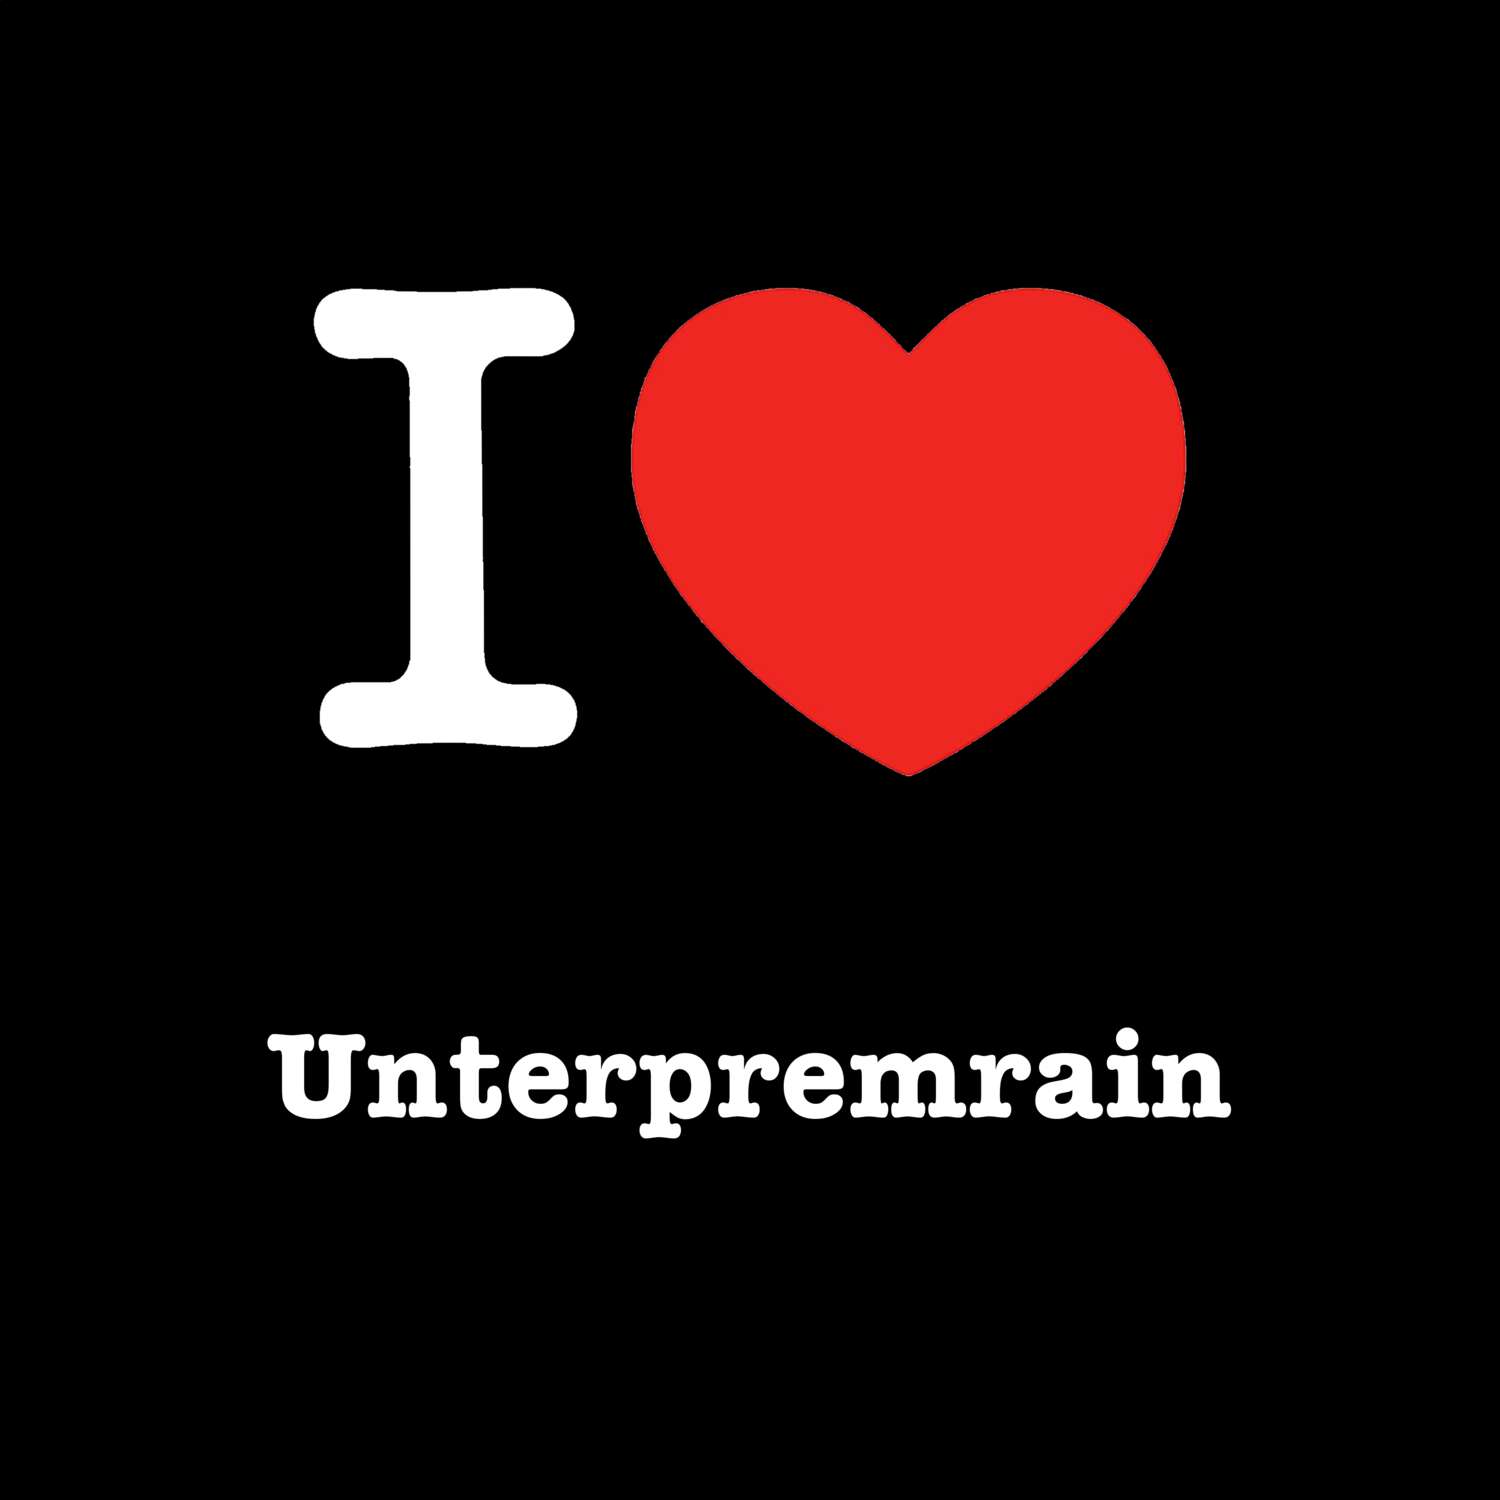 Unterpremrain T-Shirt »I love«